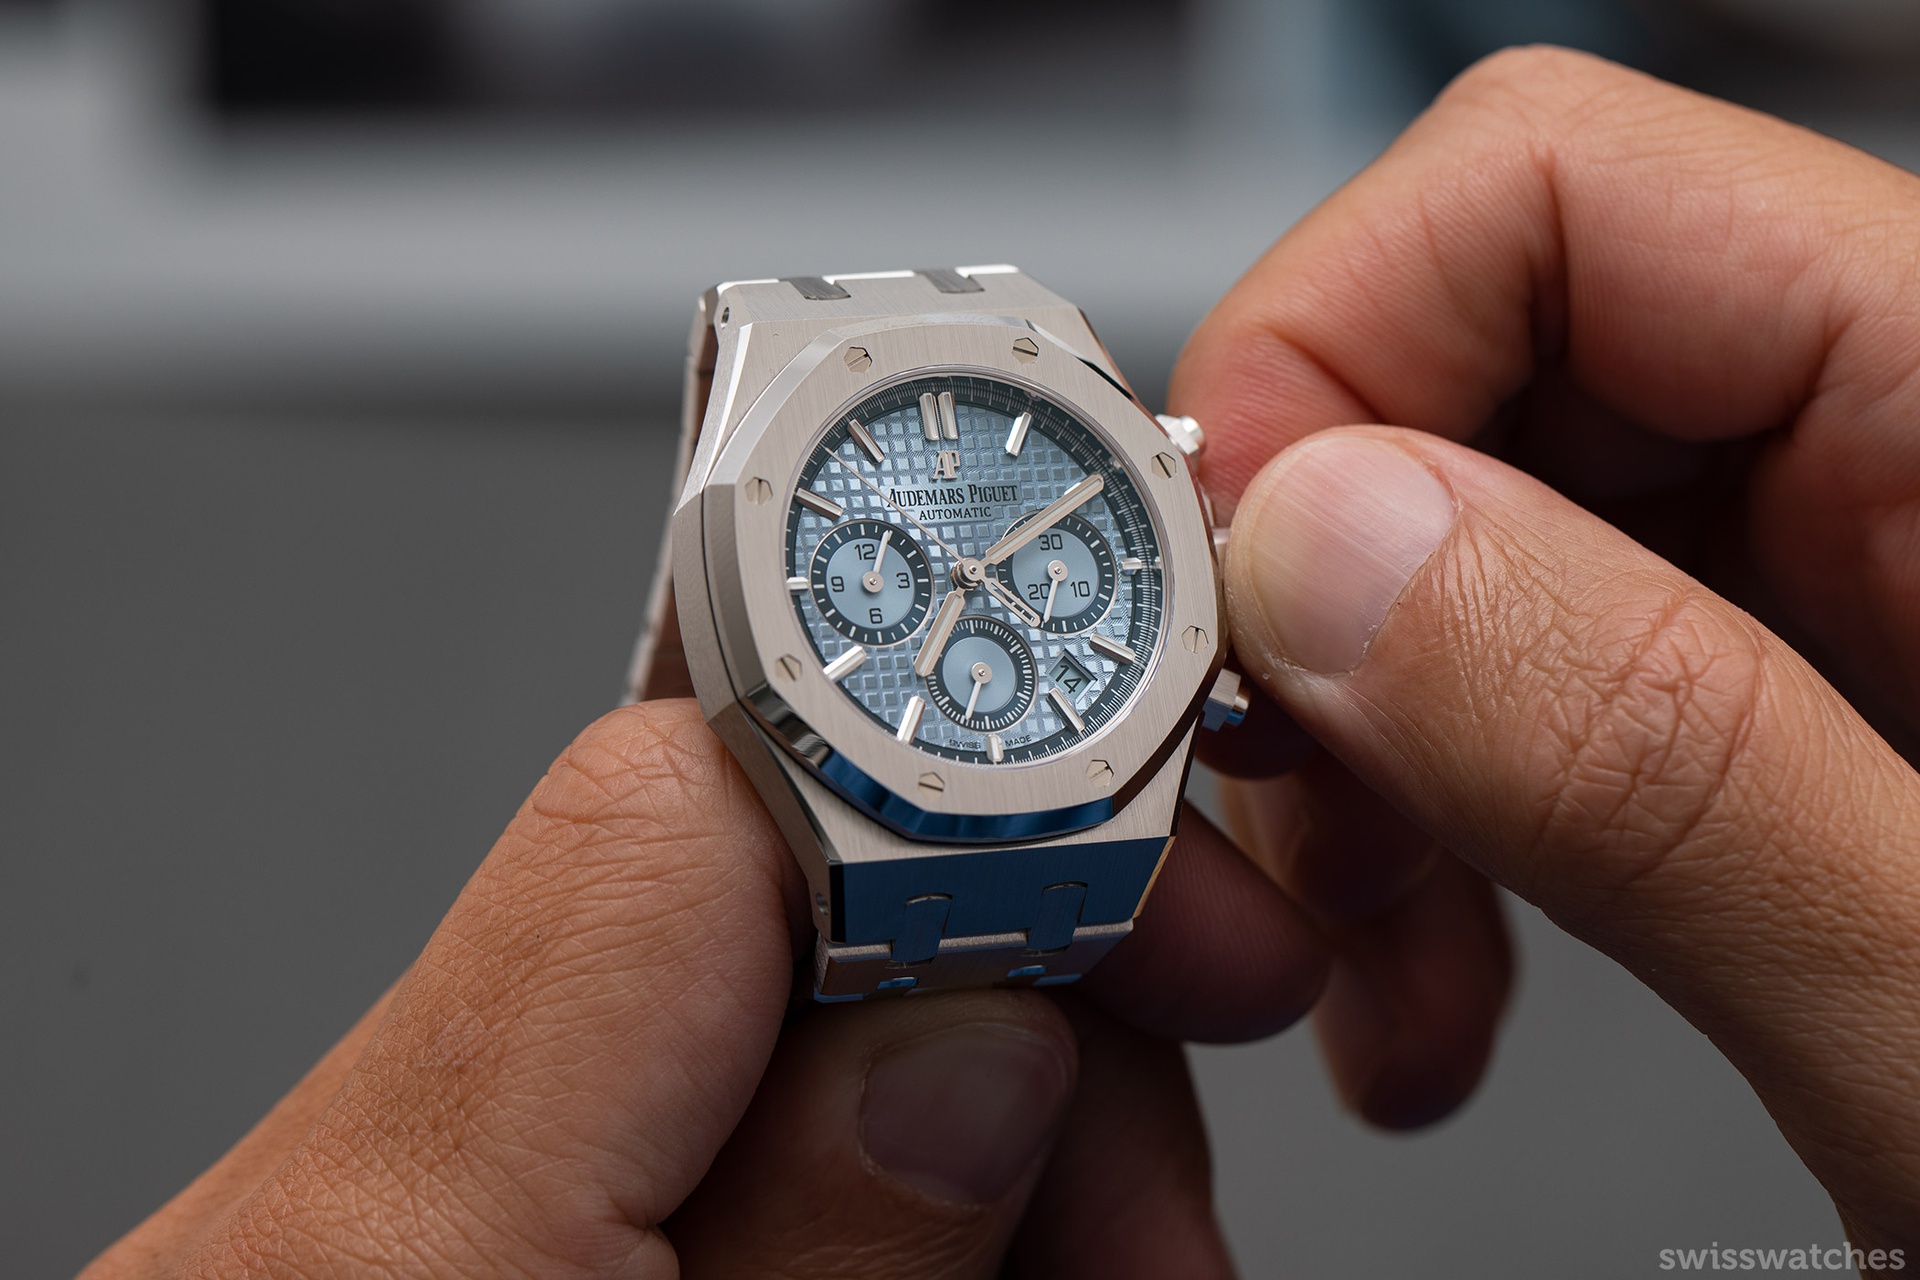 Với lớp vỏ được đúc nguyên khối từ vàng trắng 18K, chiếc đồng hồ đến từ thương hiệu Audemars Piguet với tên gọi Ice Blue Disk đem đến một vẻ ngoài trẻ trung, sang trọng. Mặt đồng hồ được vác thành hình bát giác, lớp đệm trang trí kiểu lưới lớn.